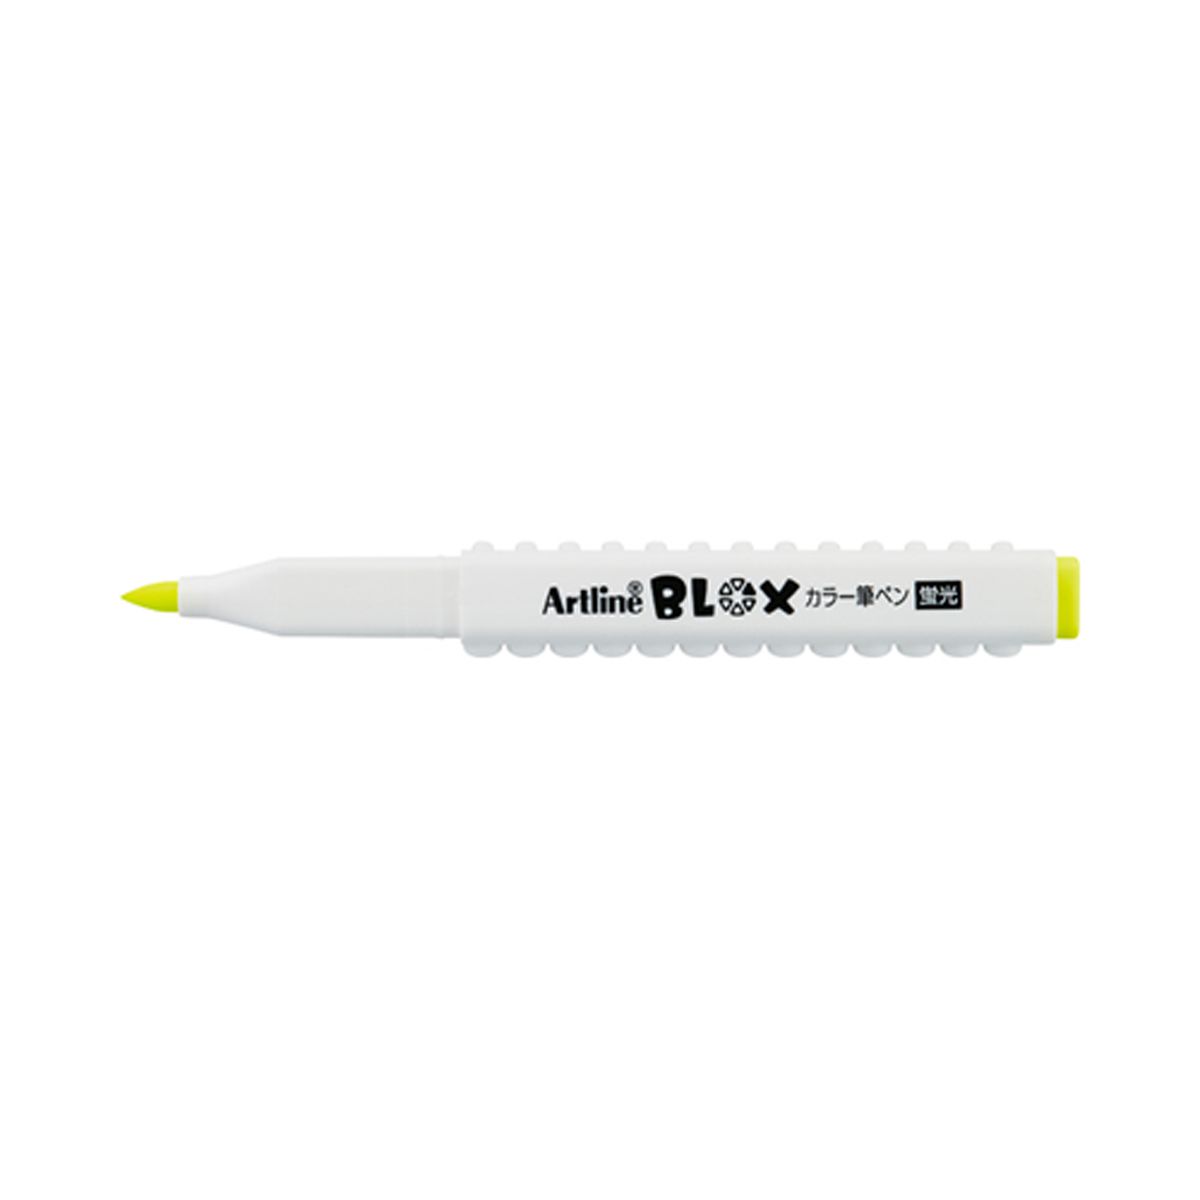 BLOX カラー筆ペン蛍光 イエロー